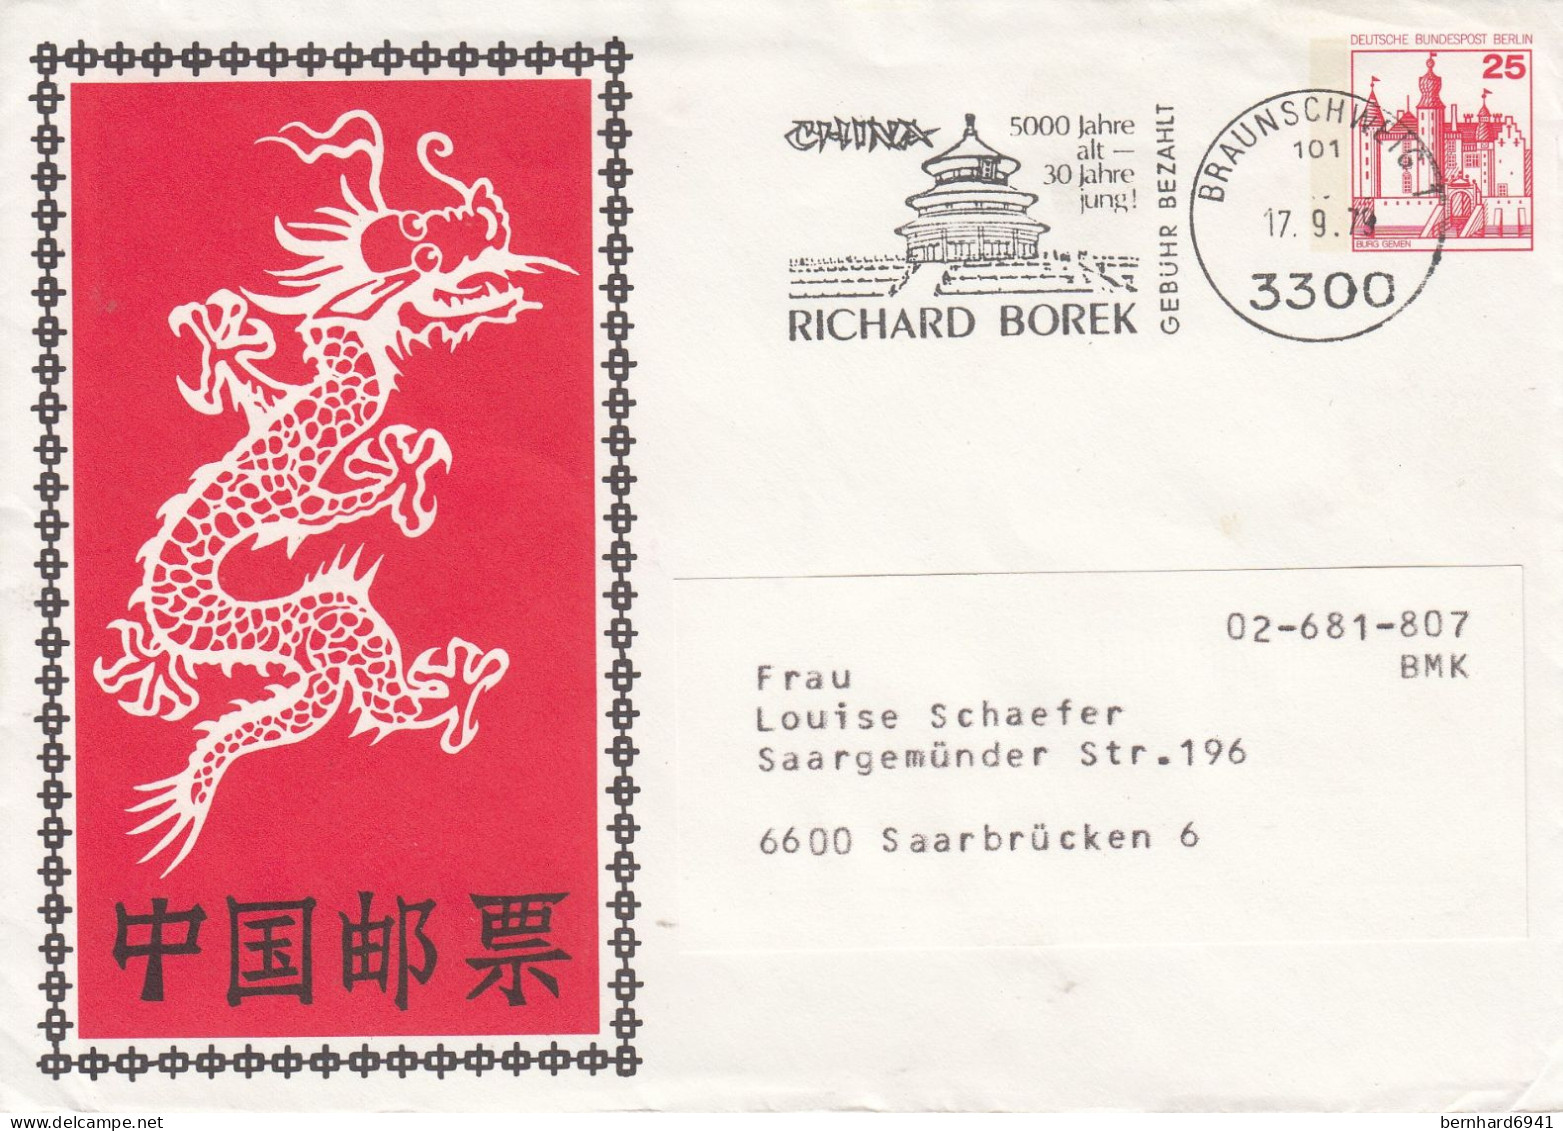 B PU 67/1 Chinischer Drache Und Schriftzeichen - Rückseite Mit 3300 Braunschweig, Braunschweig 1 - Enveloppes Privées - Oblitérées